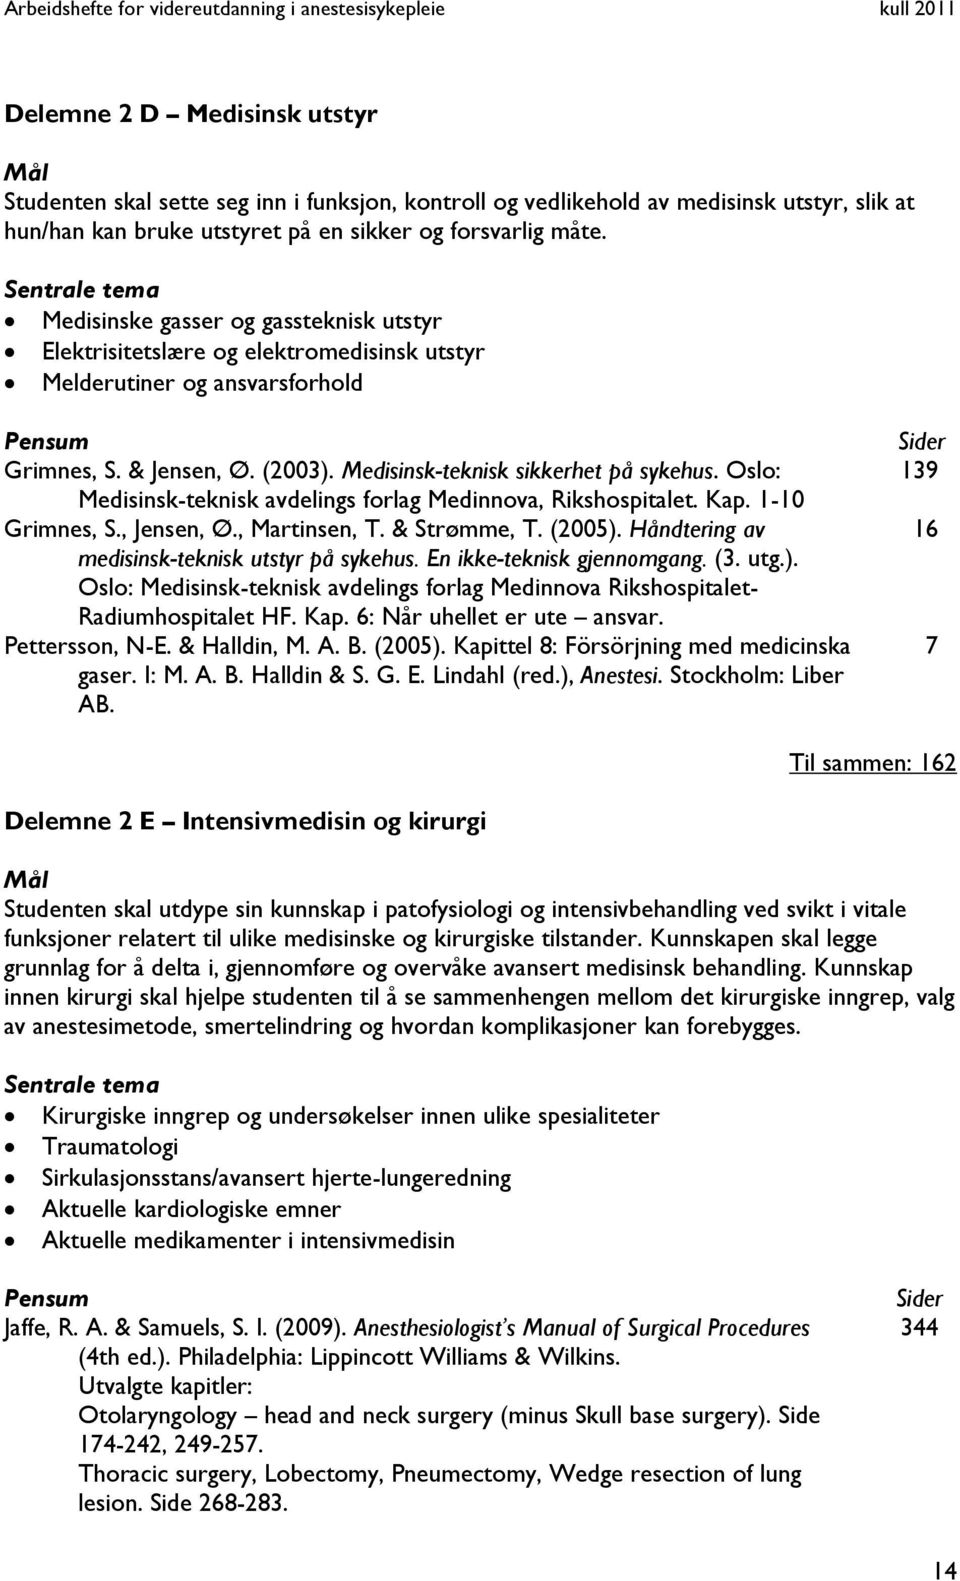 Medisinsk-teknisk sikkerhet på sykehus. Oslo: Medisinsk-teknisk avdelings forlag Medinnova, Rikshospitalet. Kap. 1-10 Grimnes, S., Jensen, Ø., Martinsen, T. & Strømme, T. (2005).